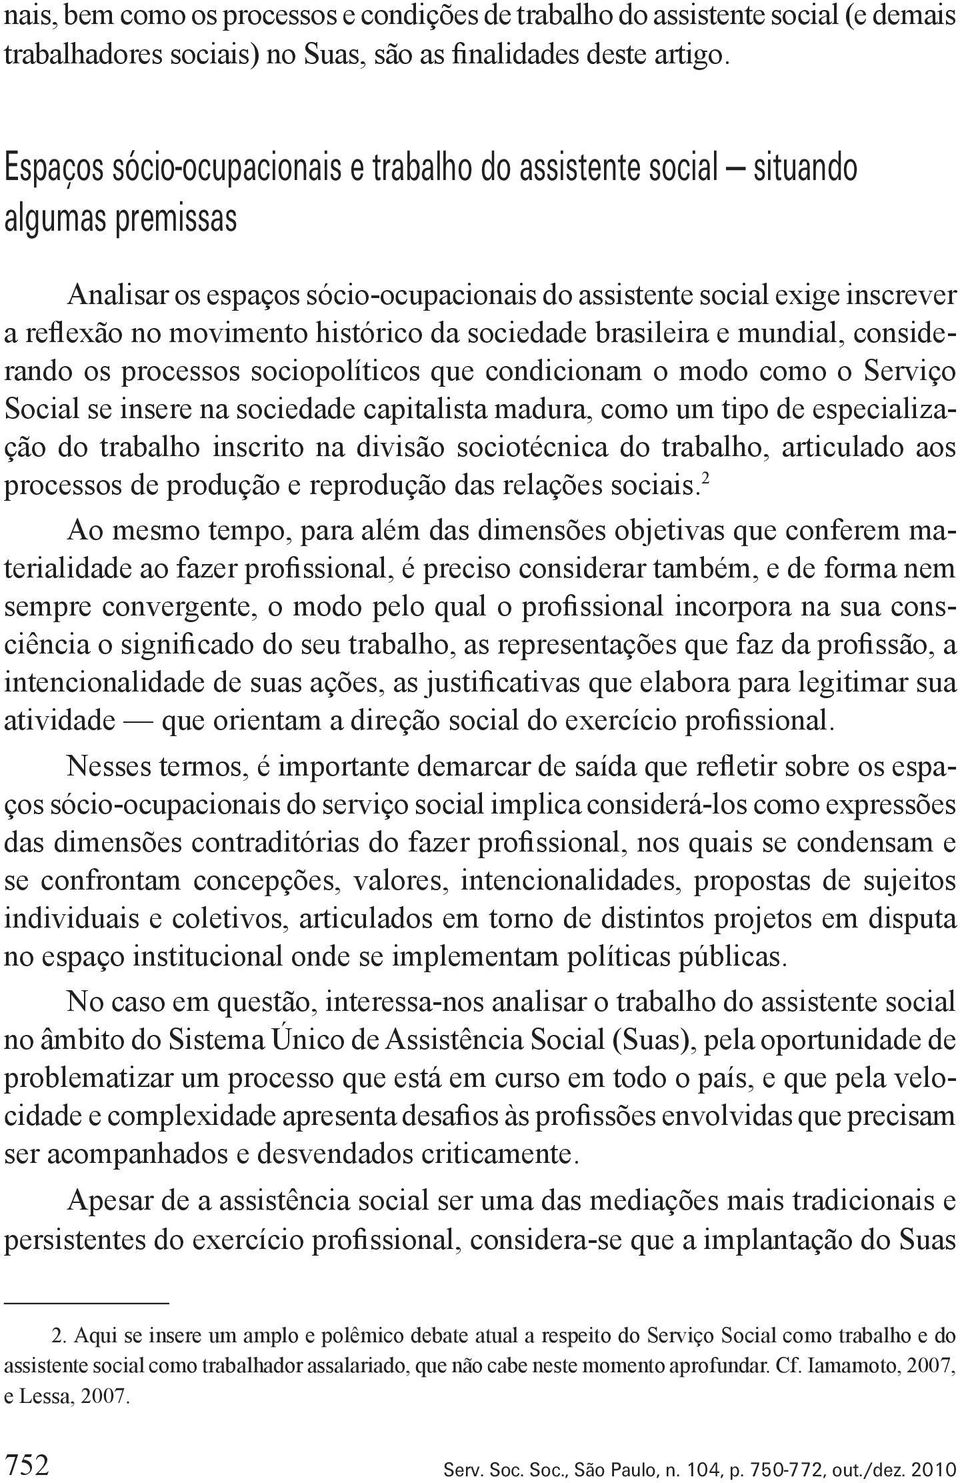 sociedade brasileira e mundial, considerando os processos sociopolíticos que condicionam o modo como o Serviço Social se insere na sociedade capitalista madura, como um tipo de especialização do